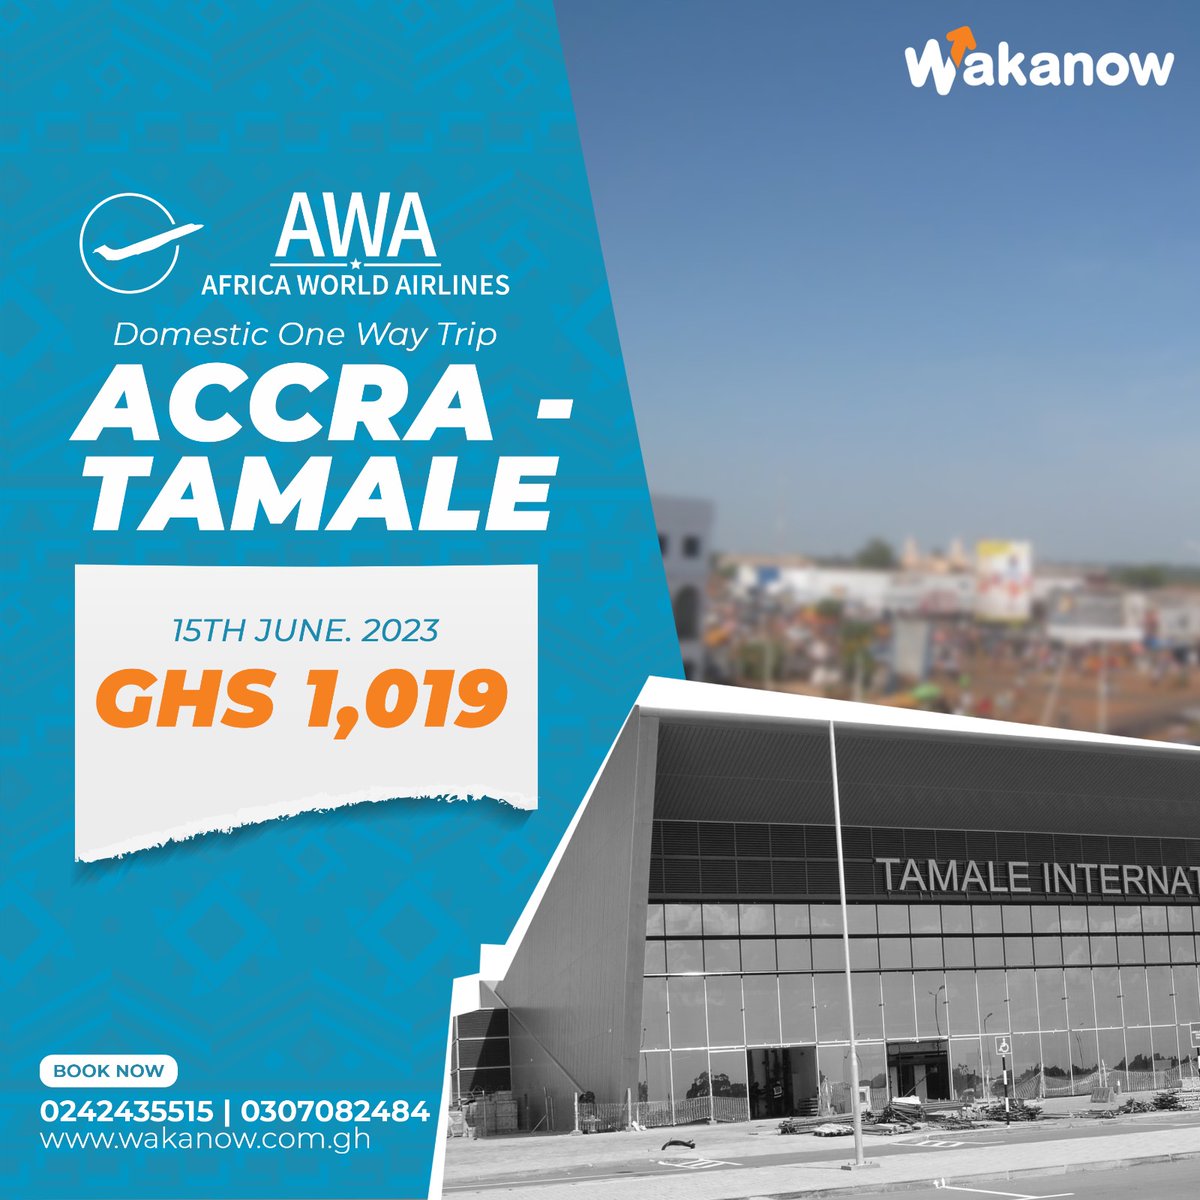 Visit wakanow.com.gh

#wakanowghana #LetsGo #traveldeals #flight #pss #airport #eastlegon #kumasi #ashaiman #flightdeals #accra #kumasi #takoradi #tamale #sunyani #wa